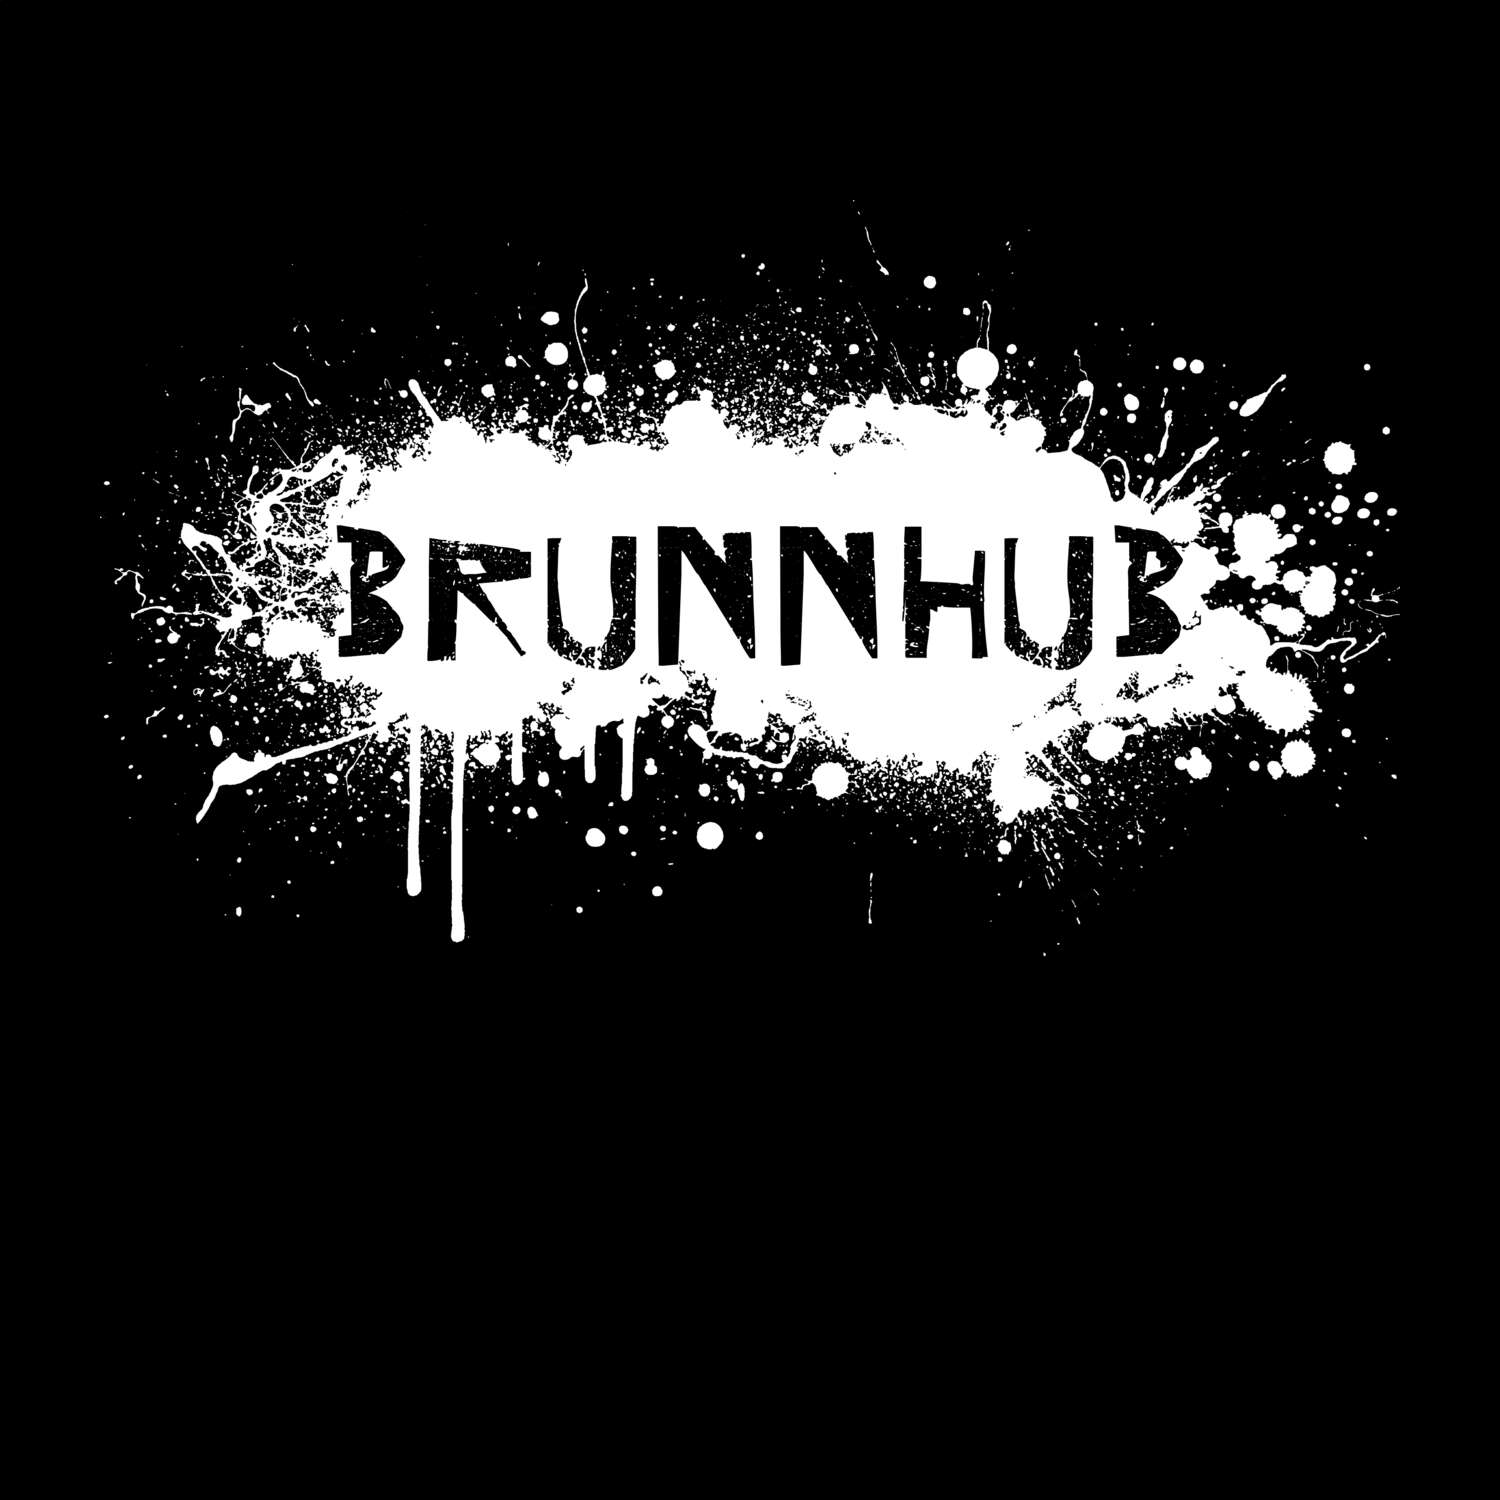 Brunnhub T-Shirt »Paint Splash Punk«